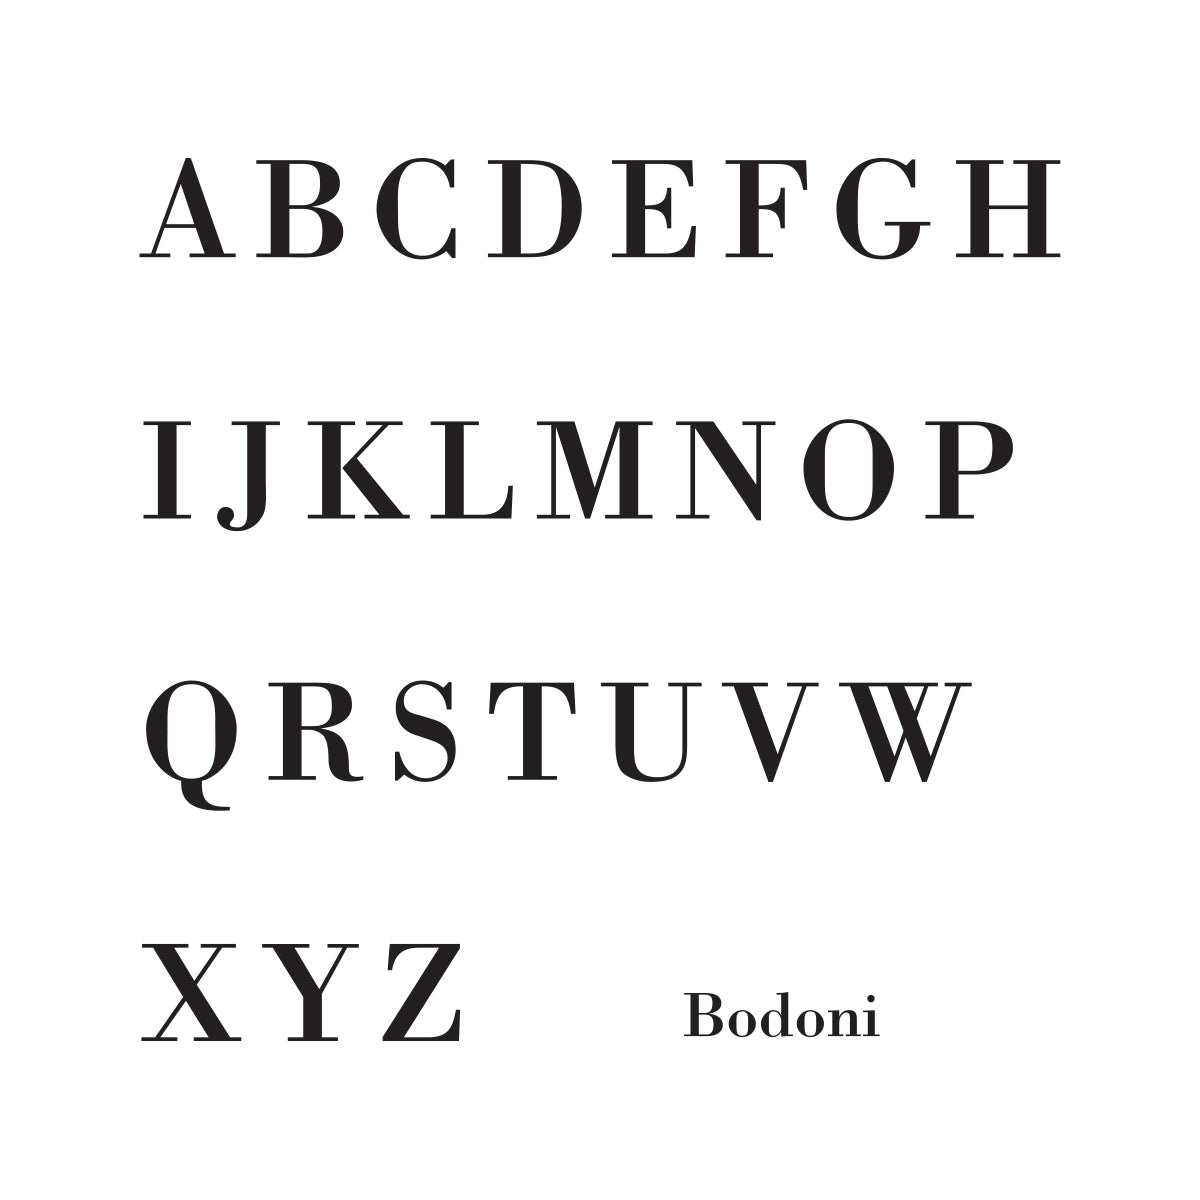 Bodoni Written Number-1 Line.